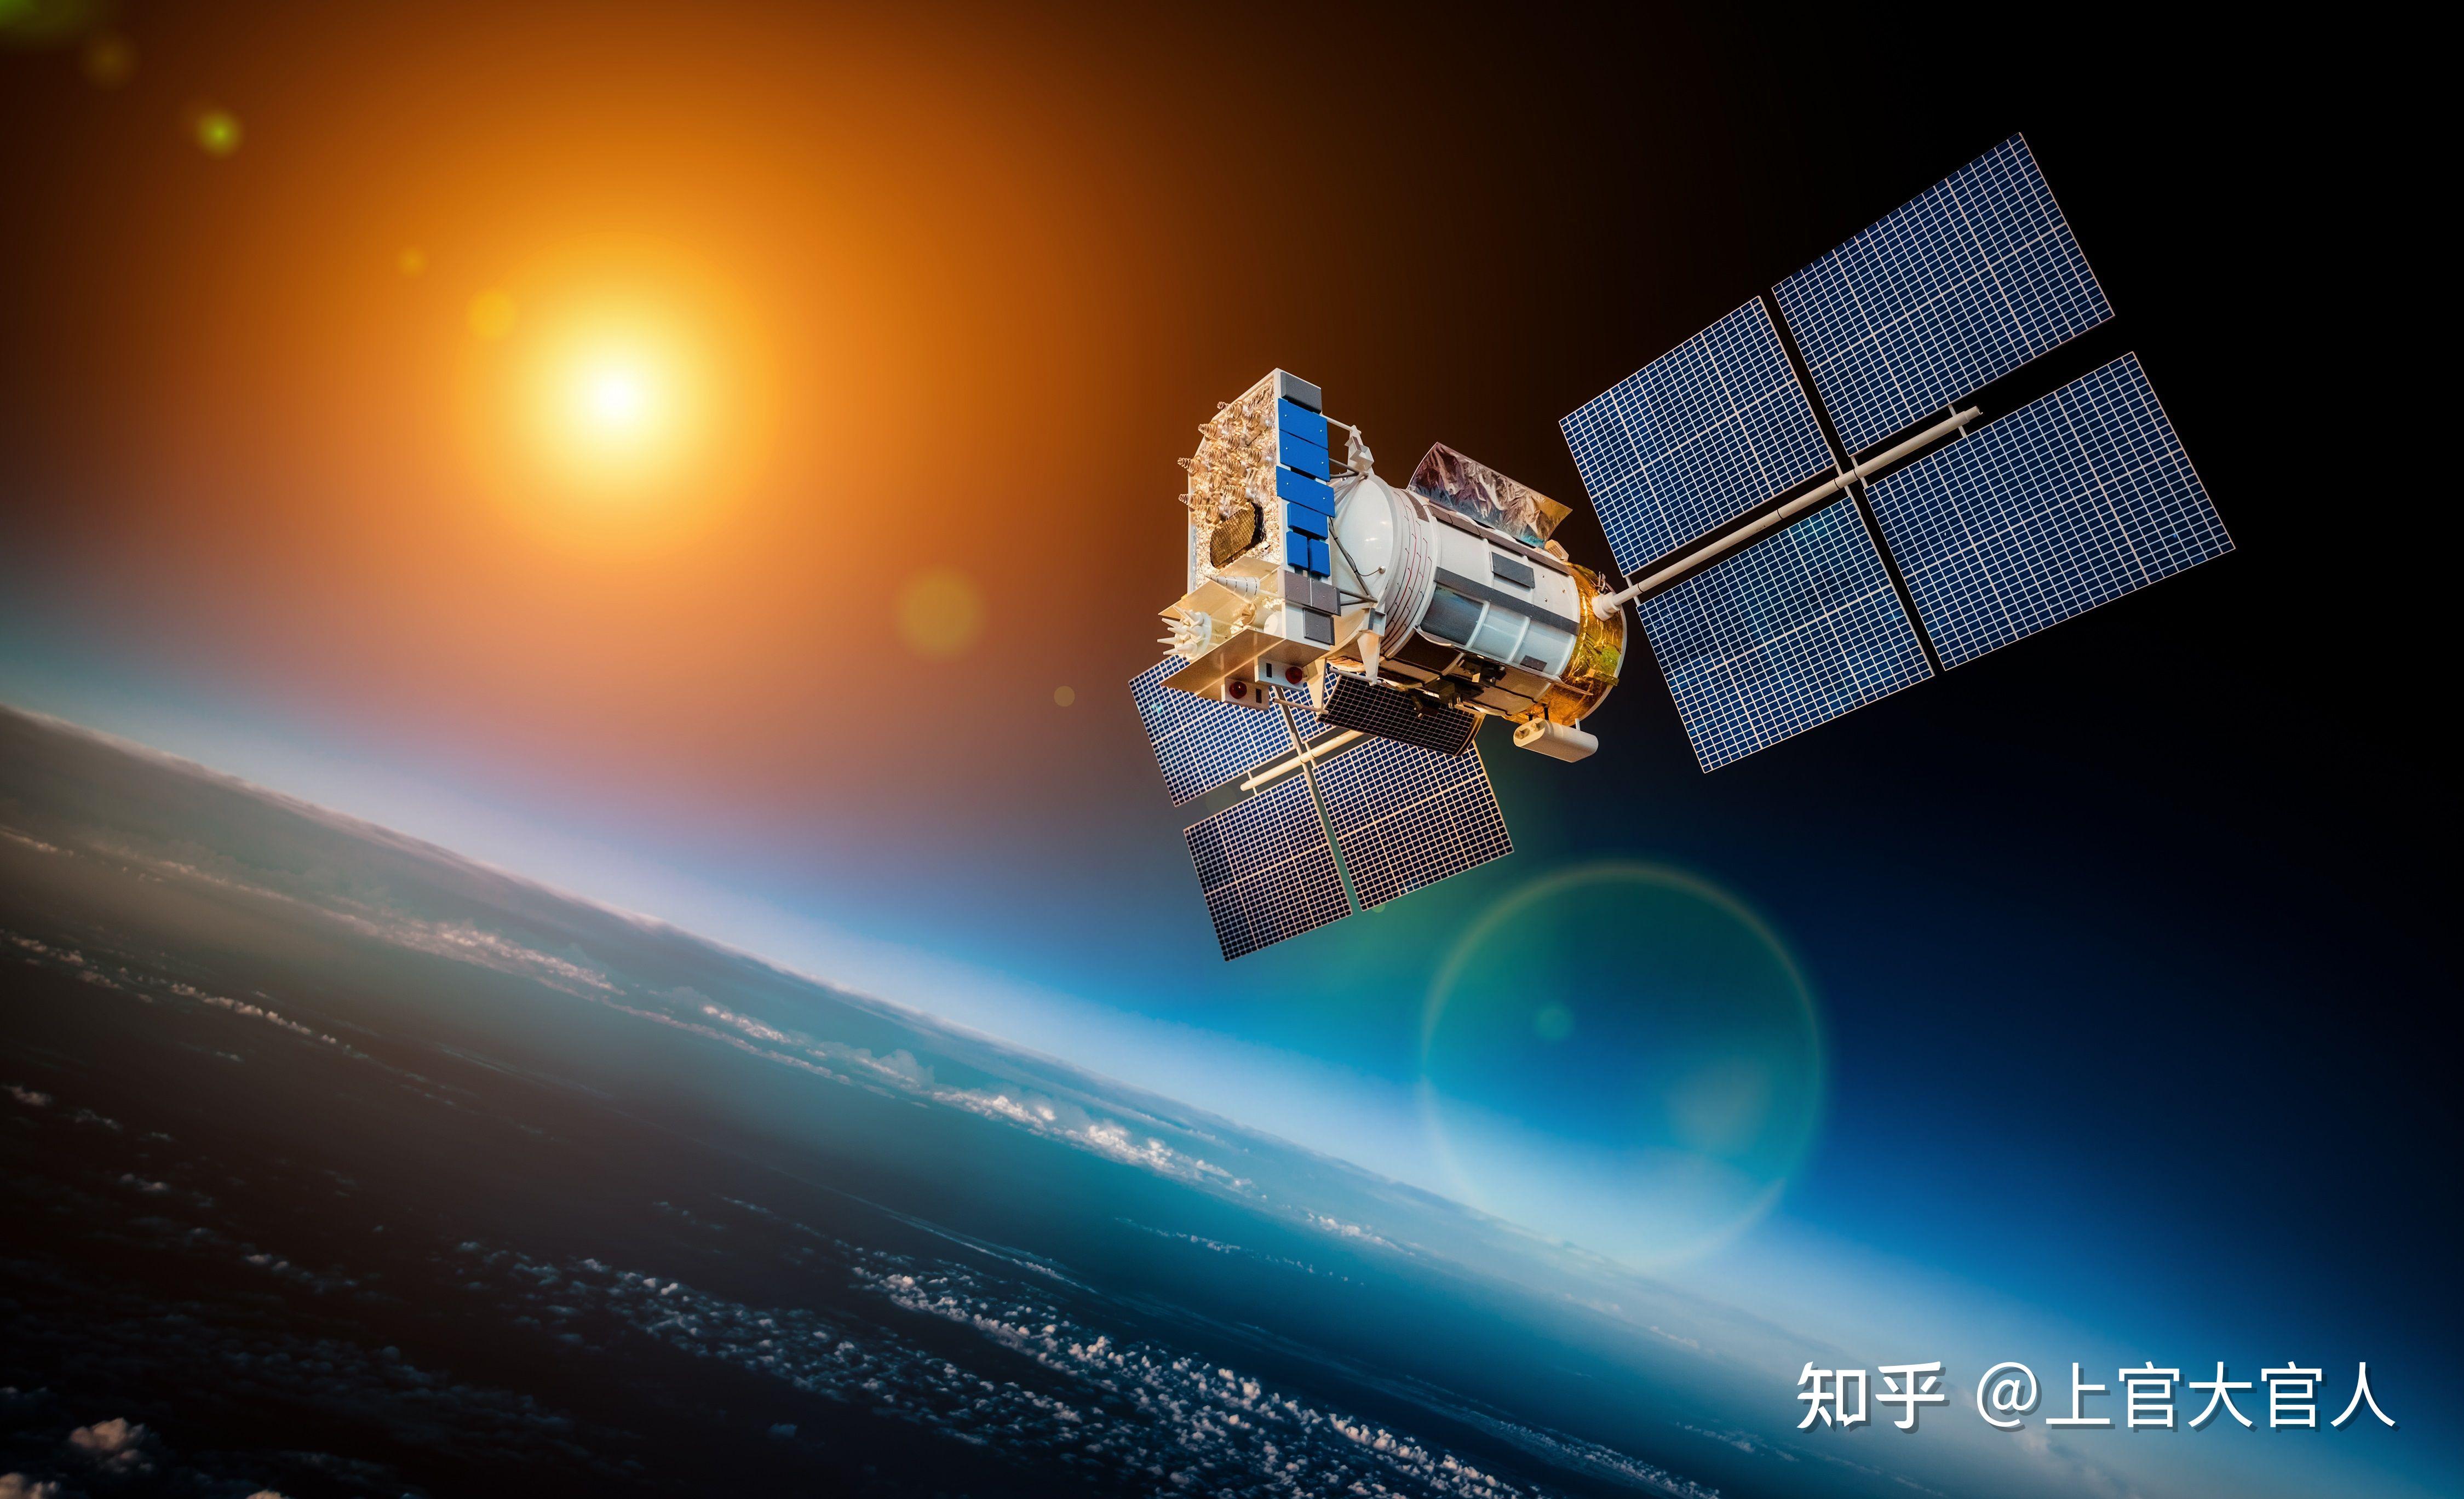 北斗卫星导航系统由空间段,地面段和用户段三部分组成,可在全球范围内